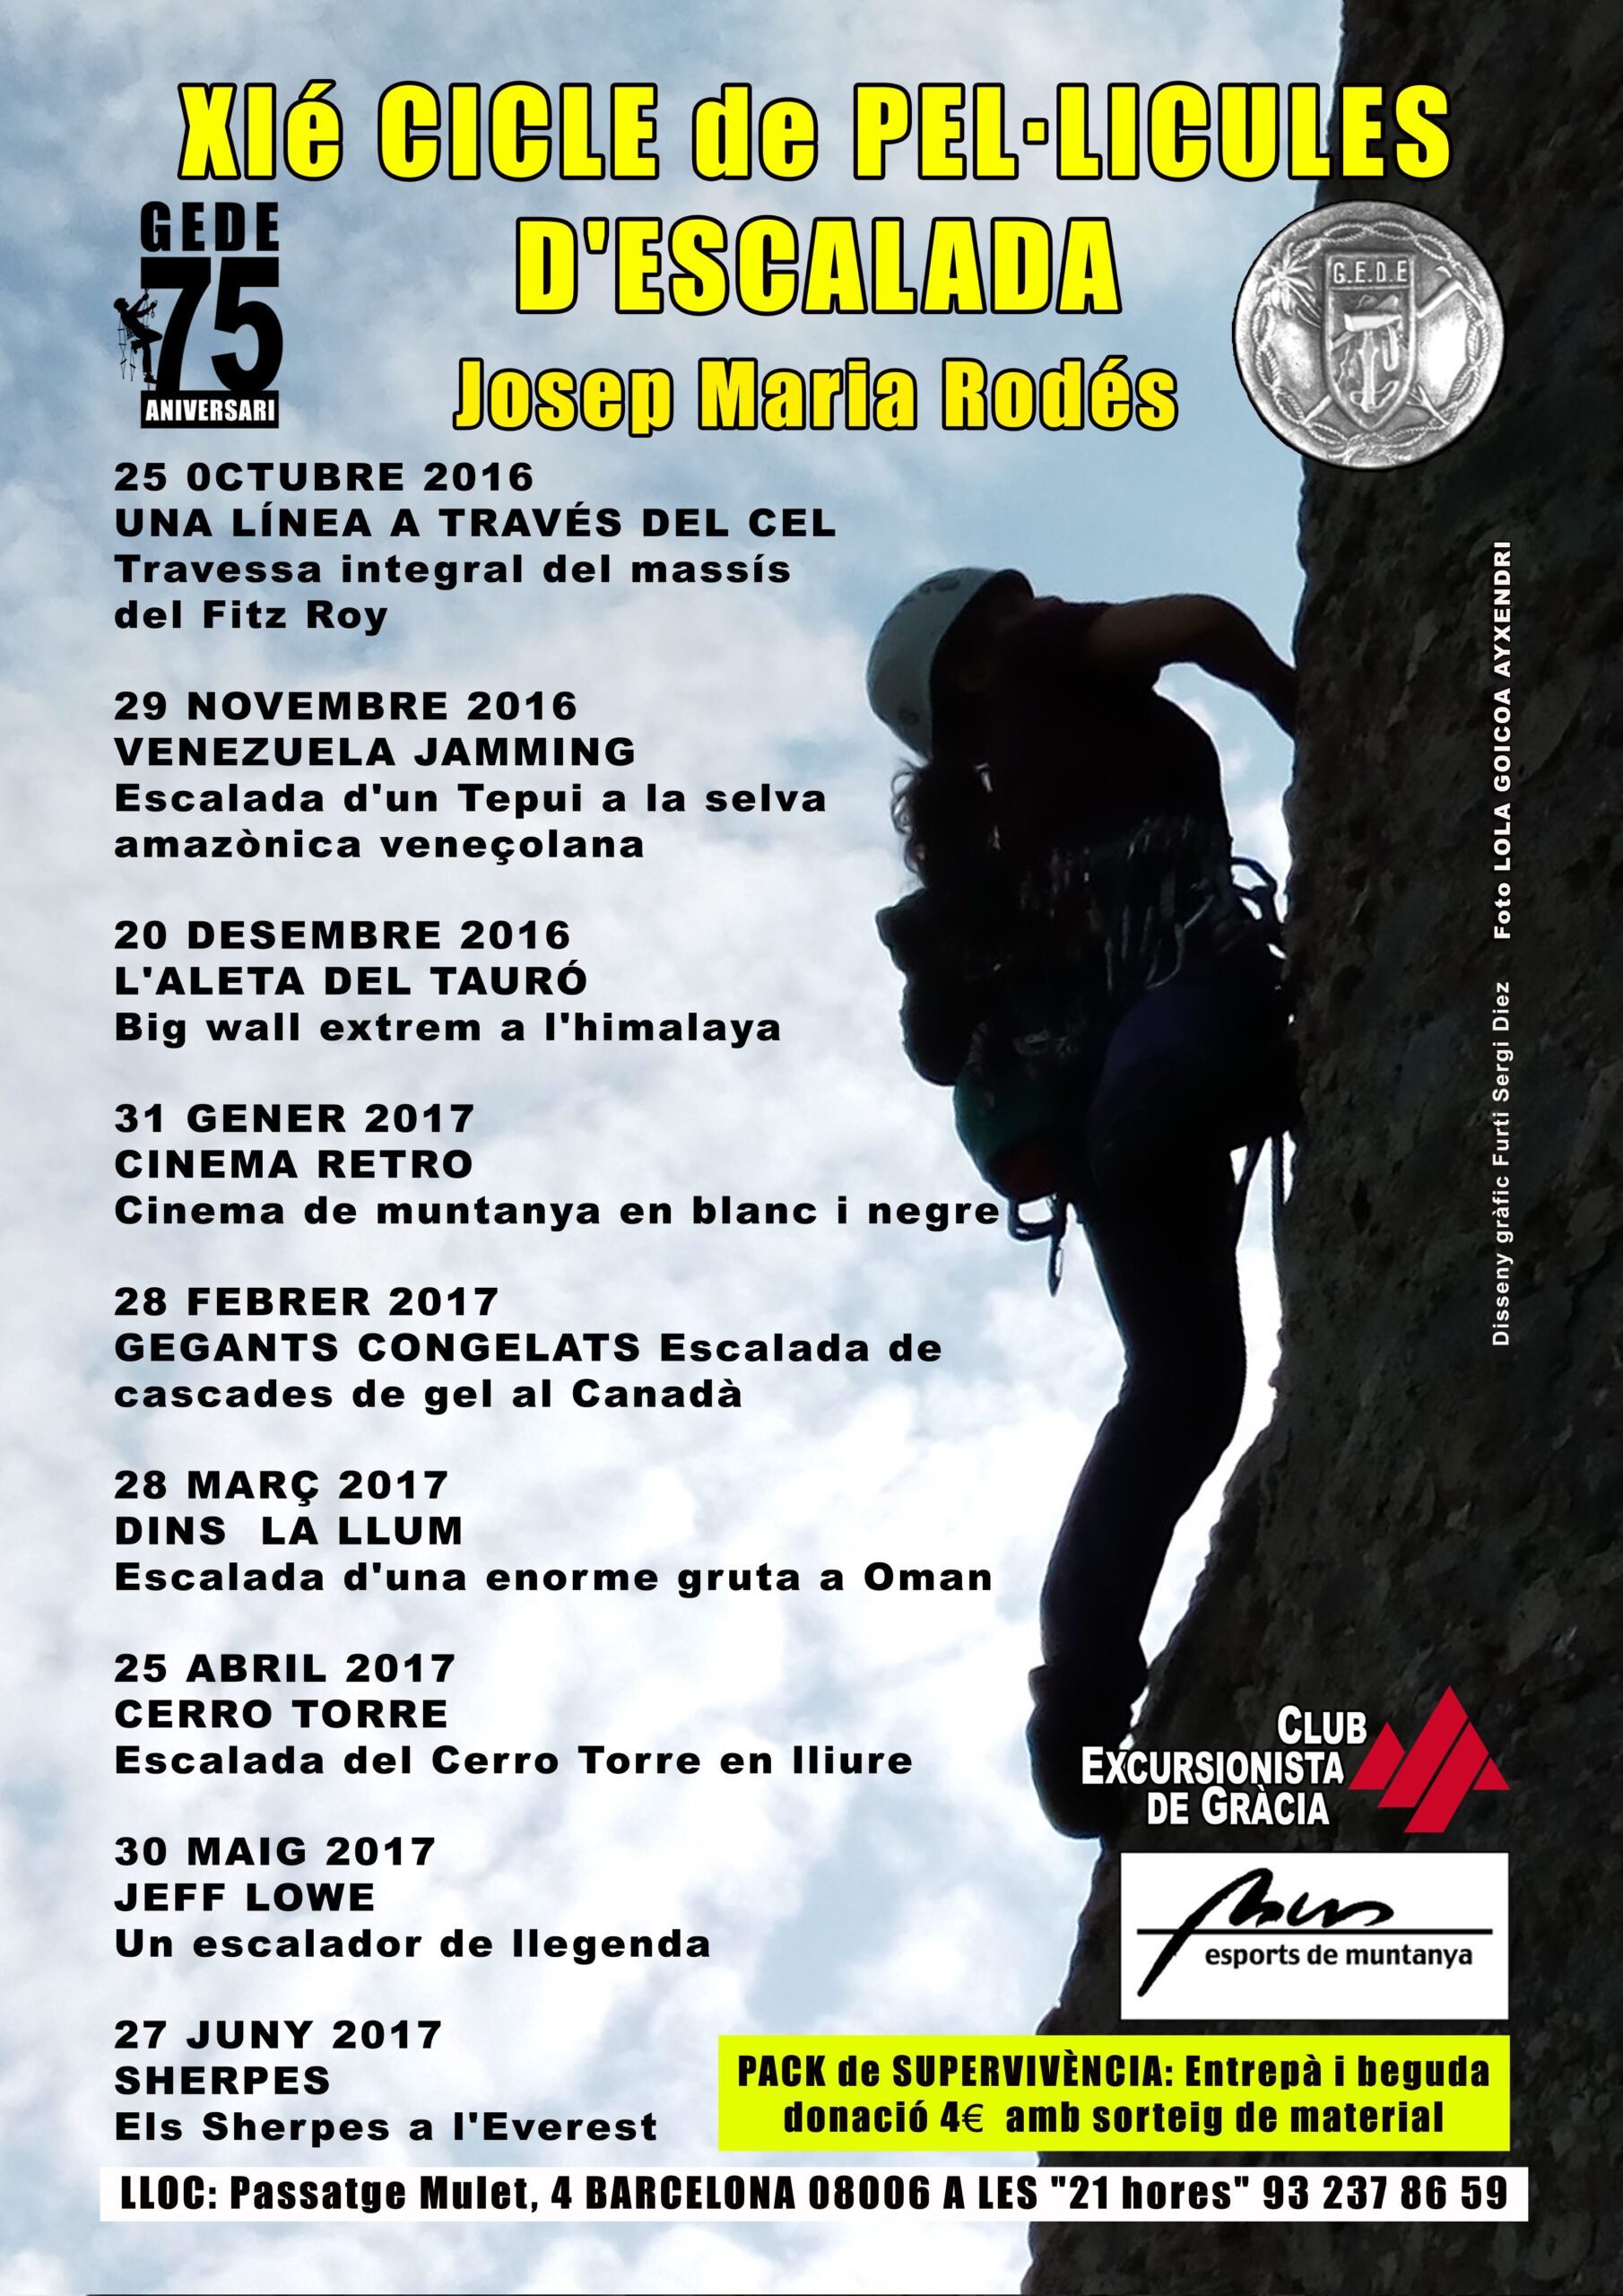 XIè Cicle de pel·lícules d’escalada Josep Maria Rodés !